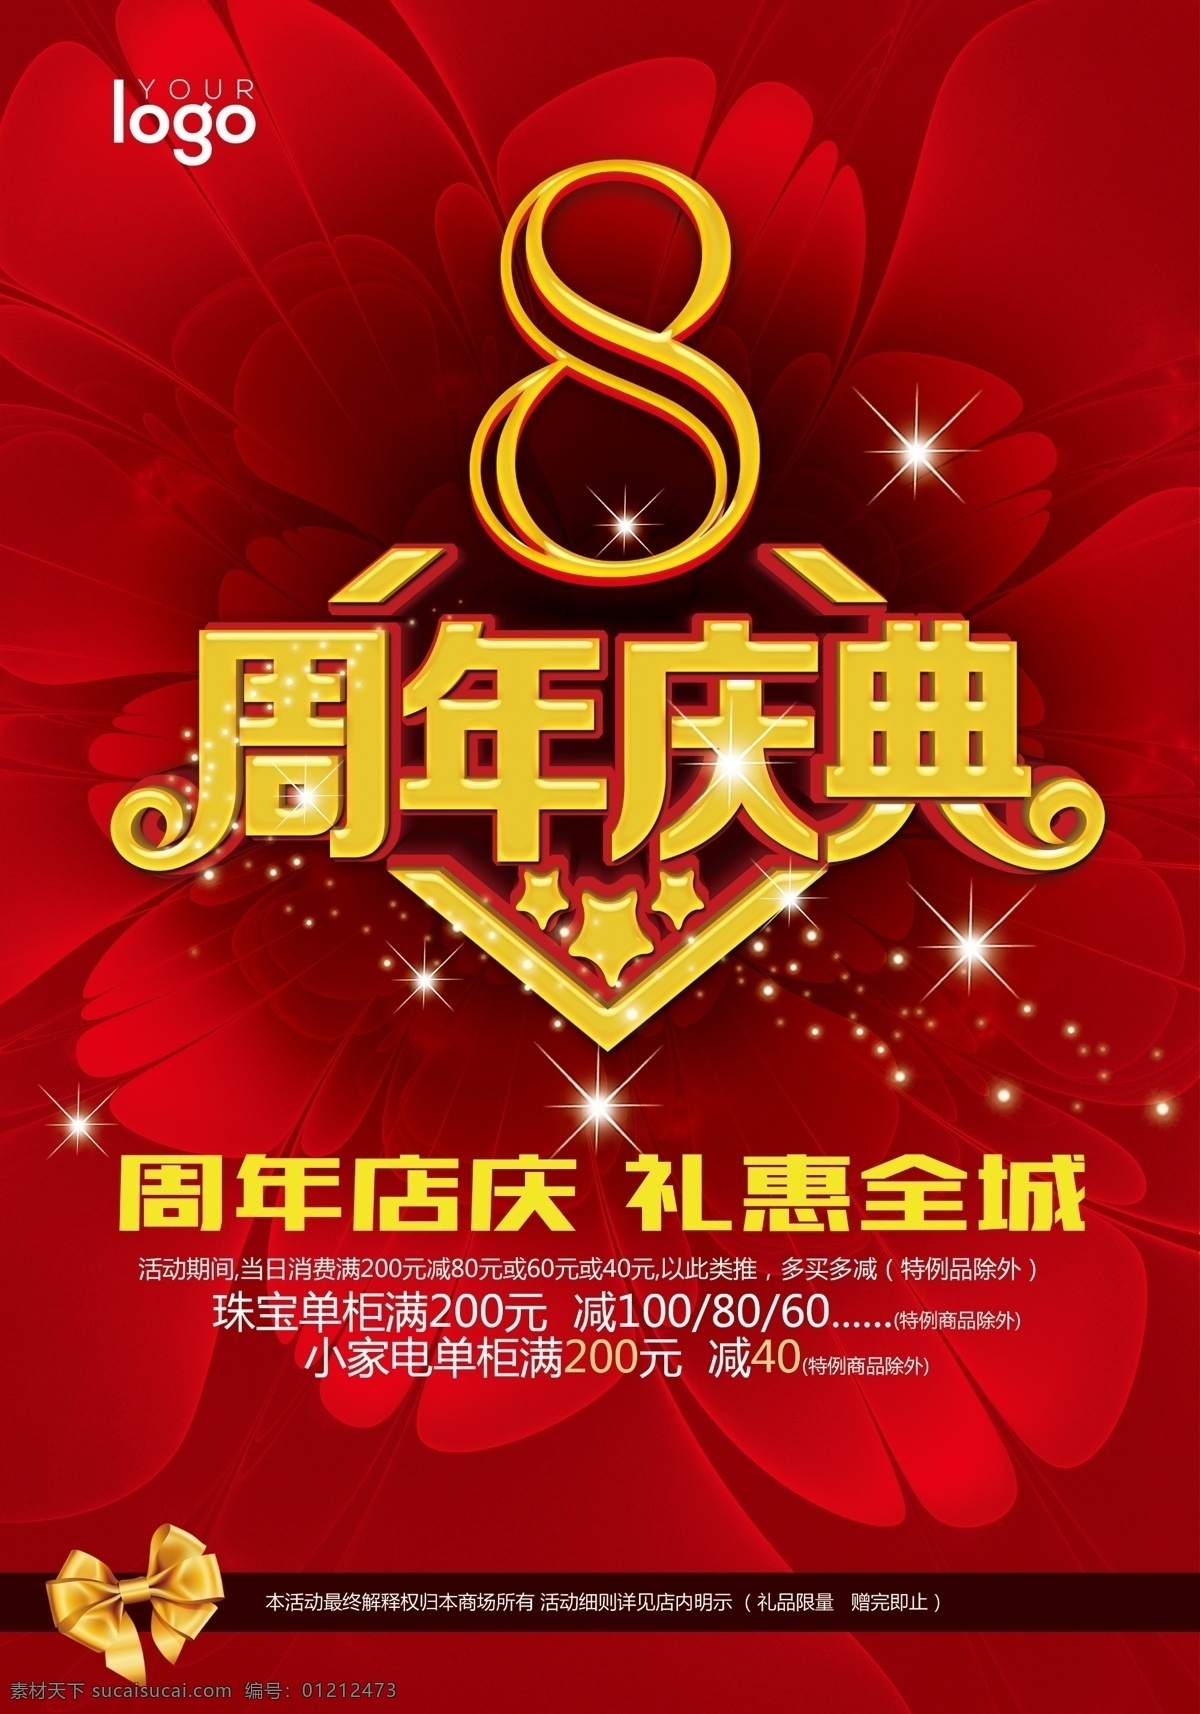 8周年庆海报 8周年庆 周年庆海报 喜庆海报 红色背景 促销 打折 节日海报